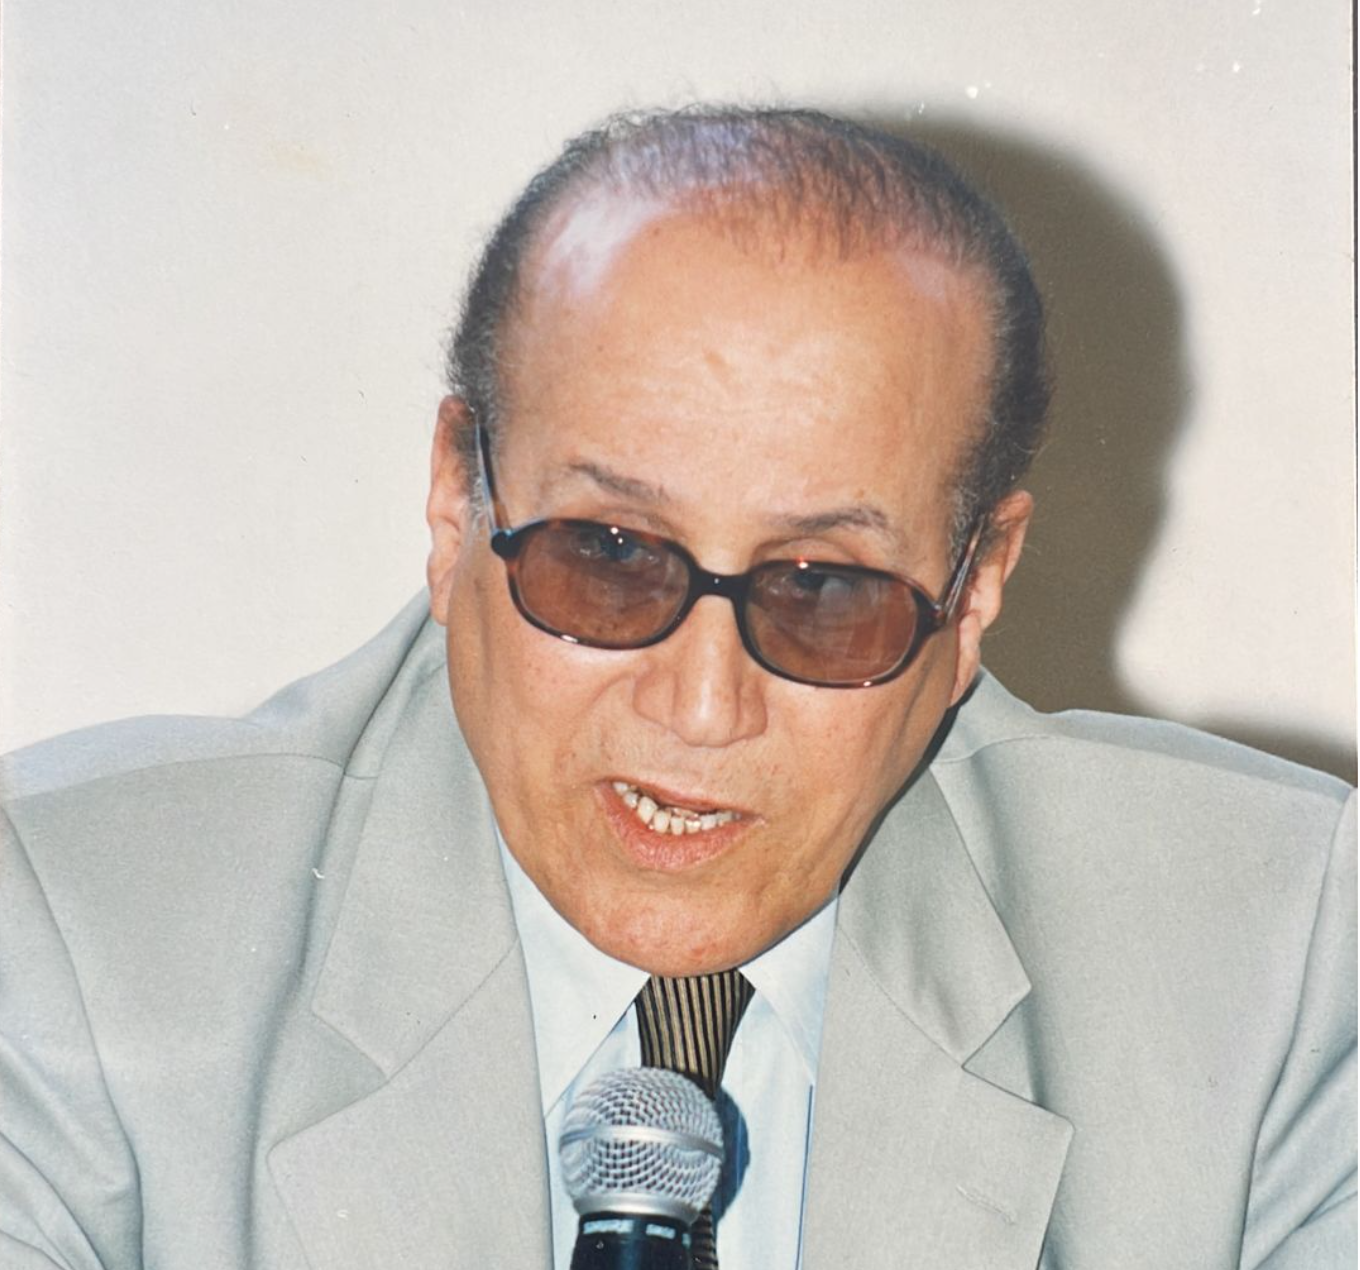 تعزية في وفاة حدو الشيكر أحد مؤسسي التجمع الوطني للأحرار